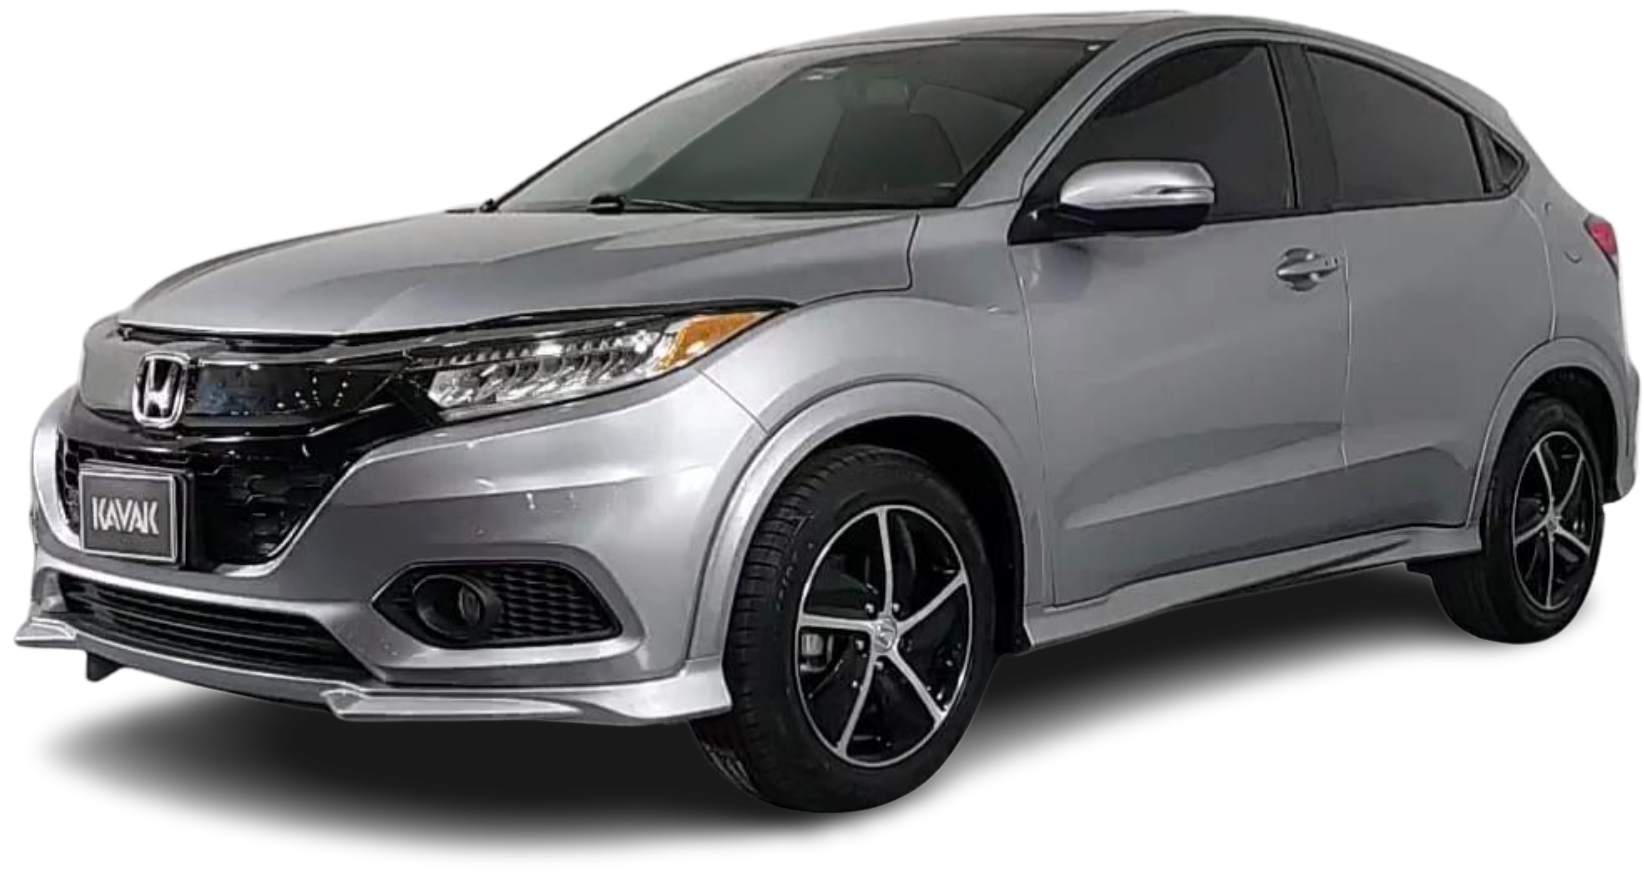 Honda Hr-V SUV 2020 2019